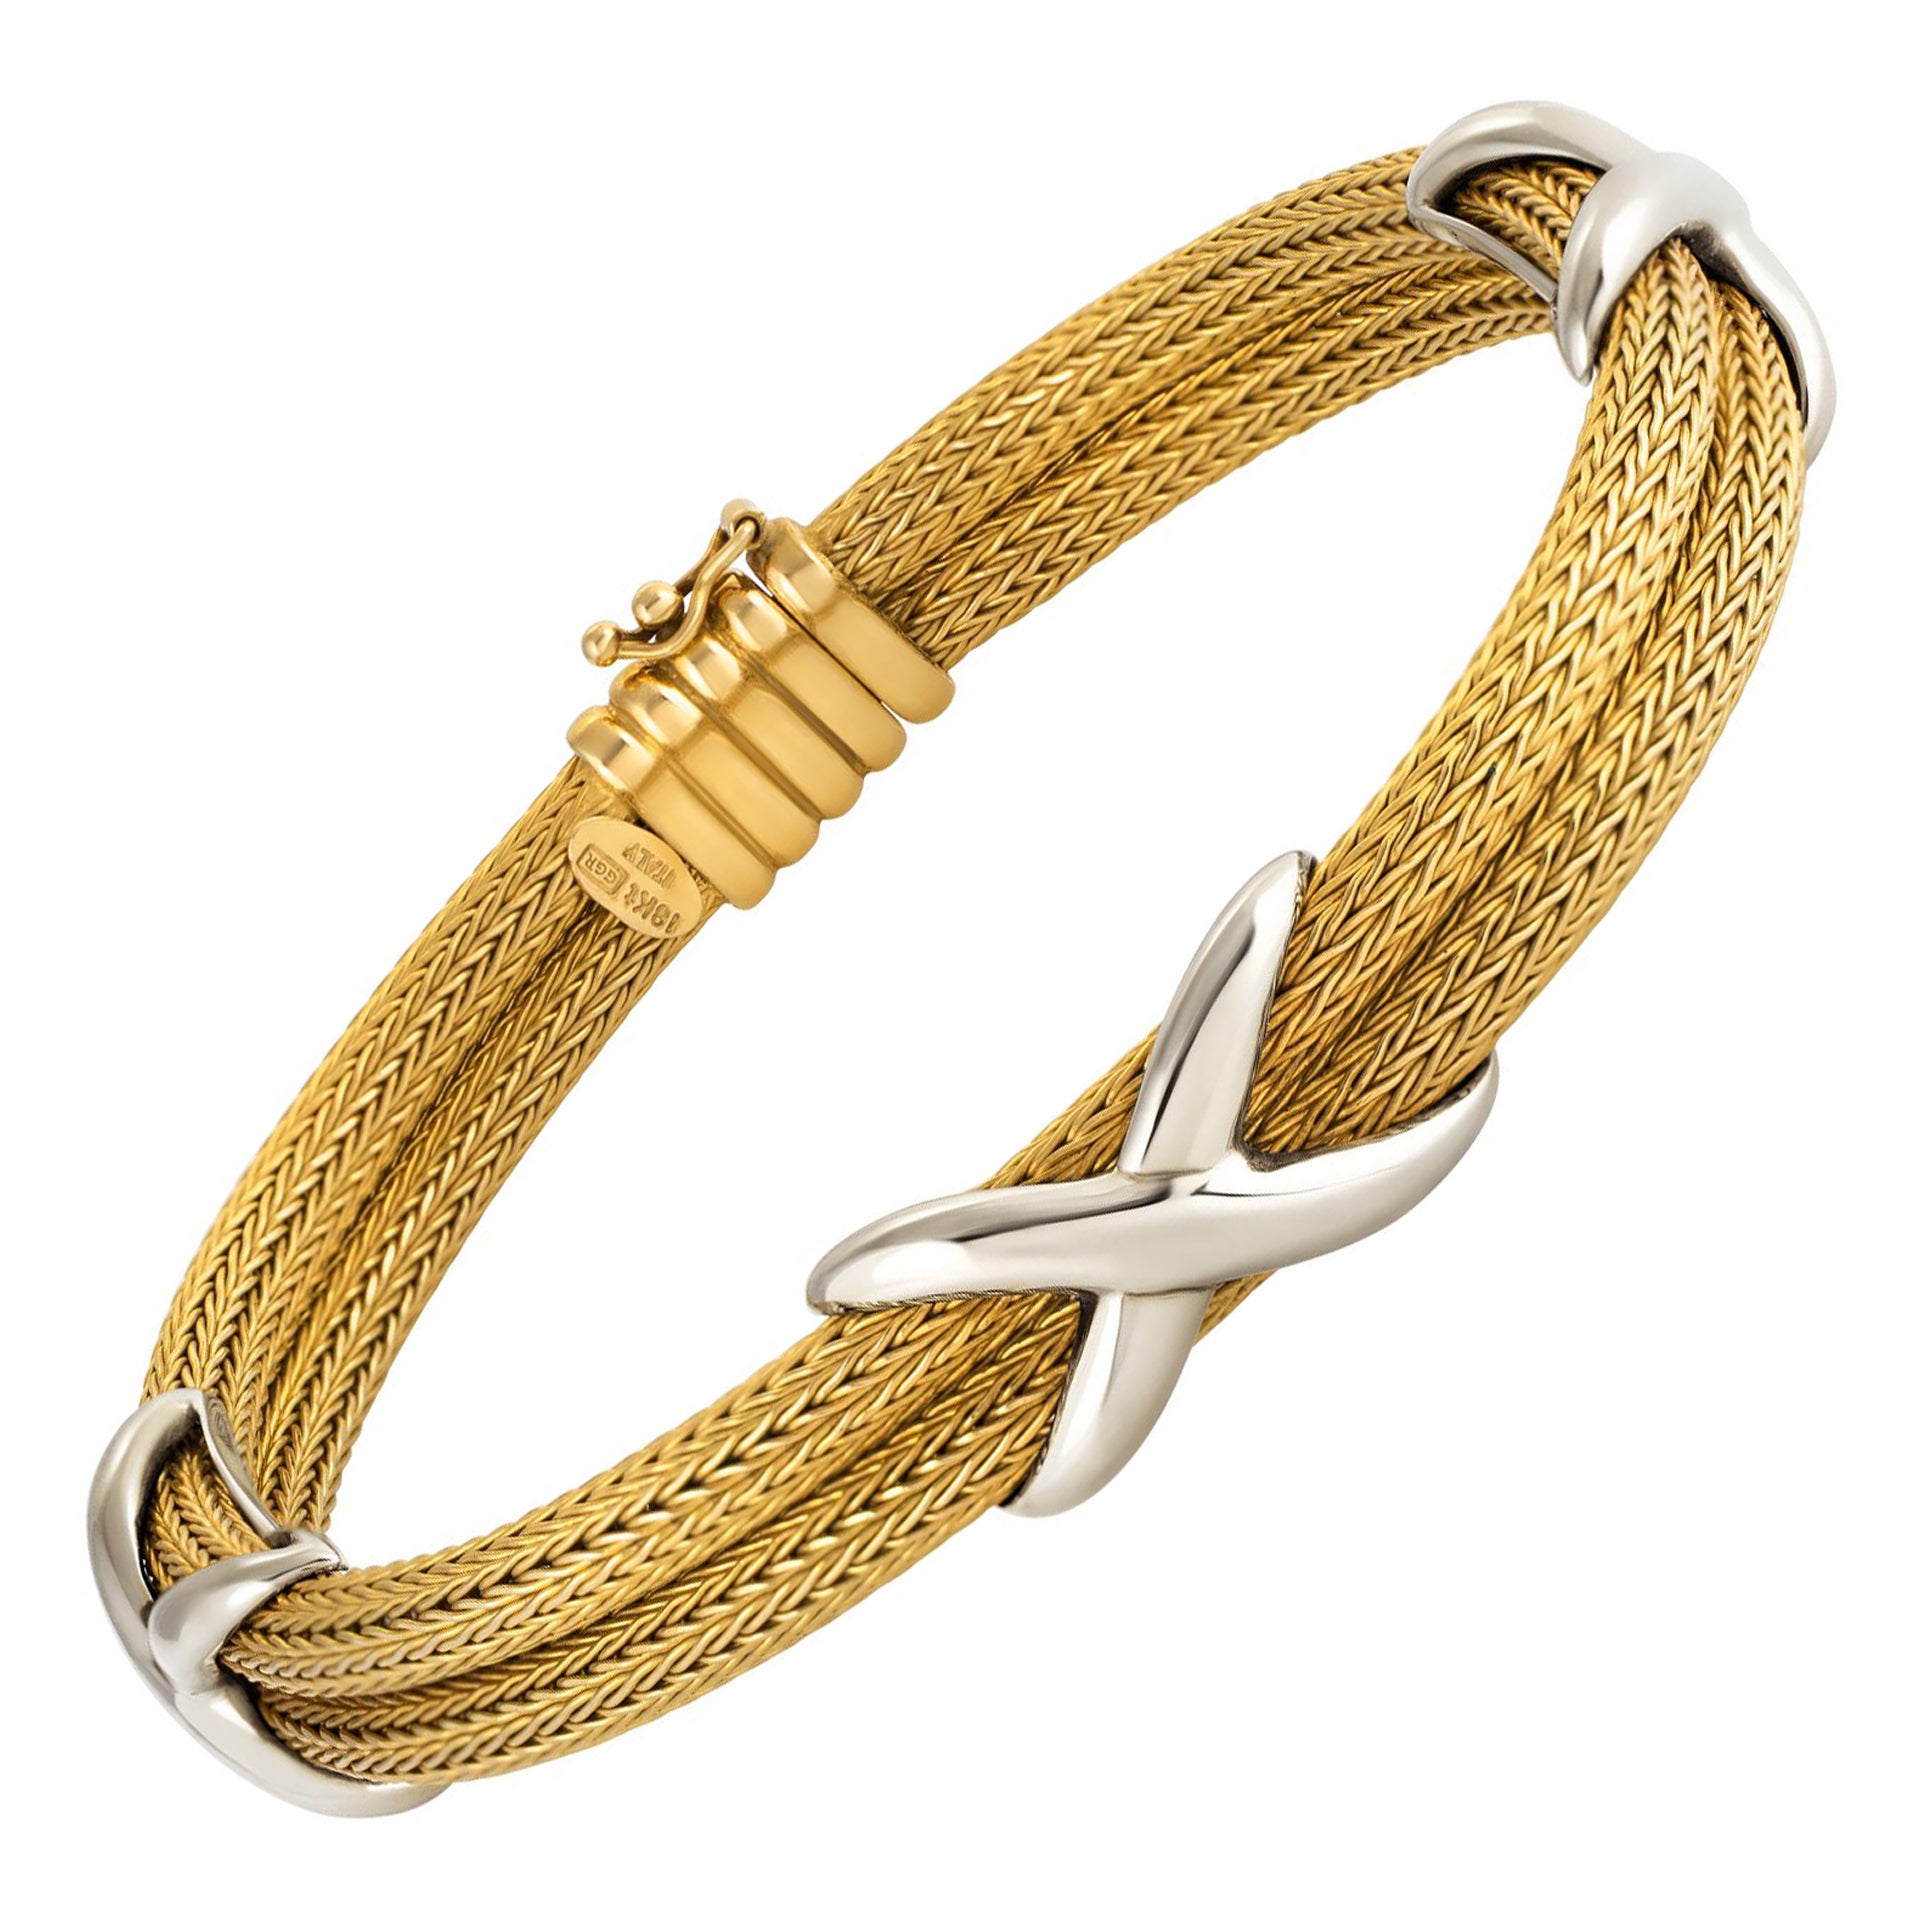 Italian 18k yellow gold mesh bracelet